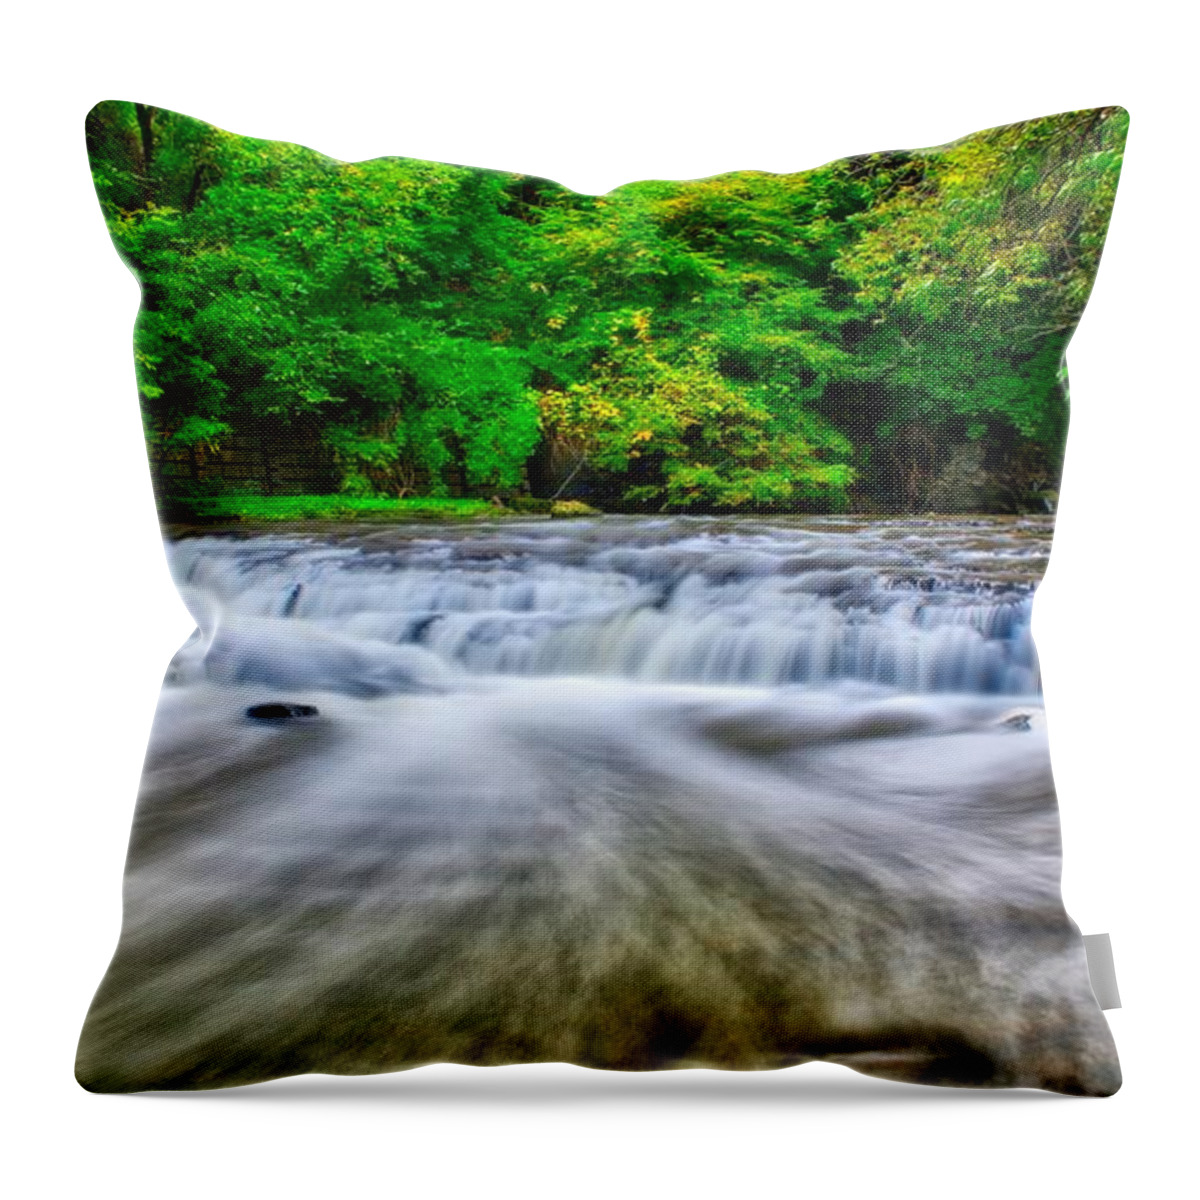 Nunweiler Throw Pillow featuring the photograph Corbett's Glen Cascade by Nunweiler Photography